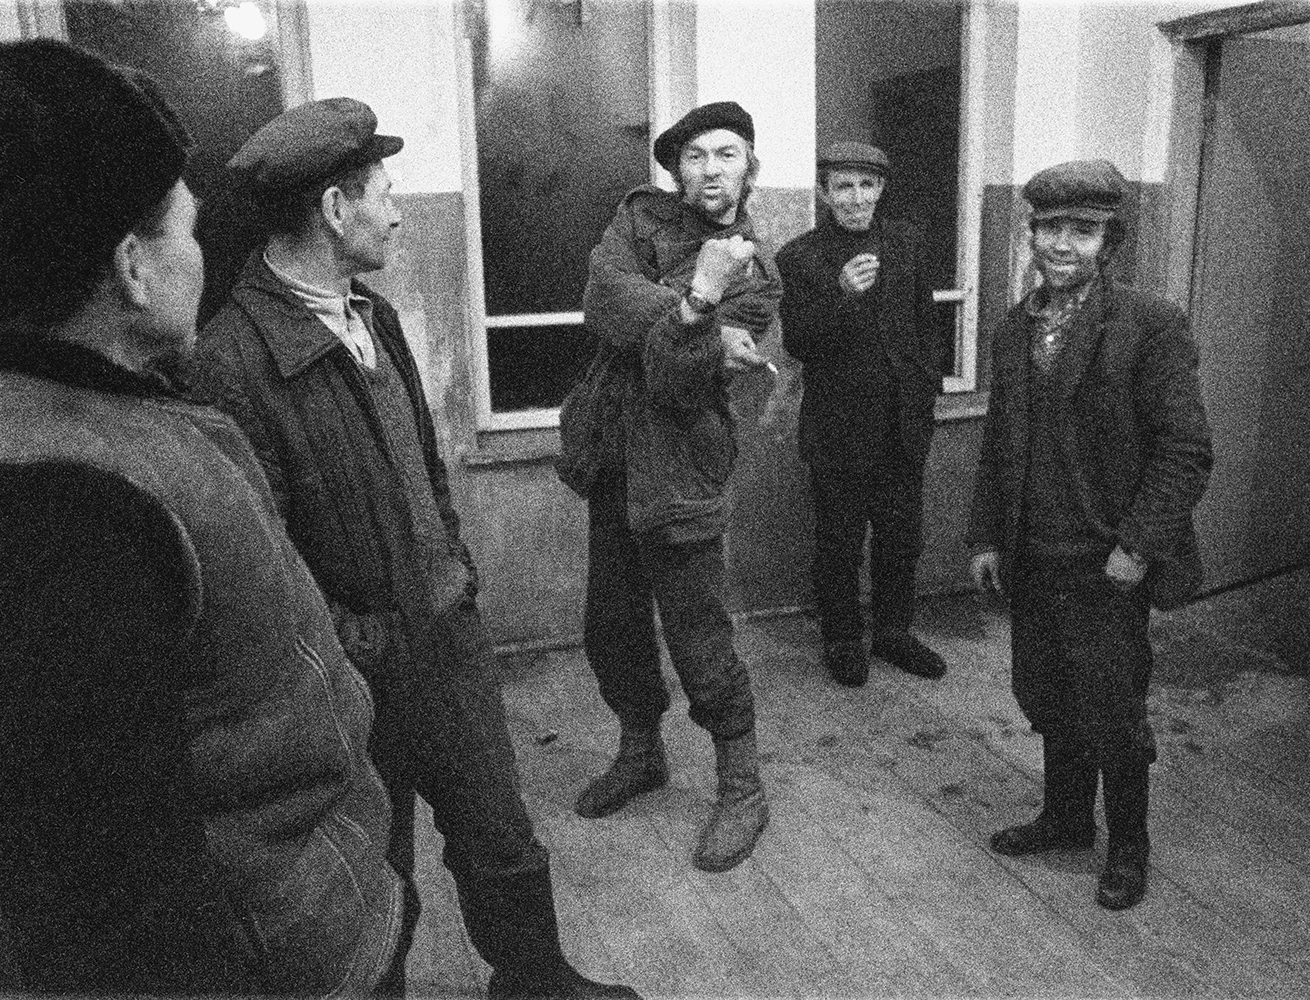 Fot. Maciej Osiecki, wybory Sołtysa wsi Annopol, ok. 1980 (źródło: materiały prasowe organizatora)